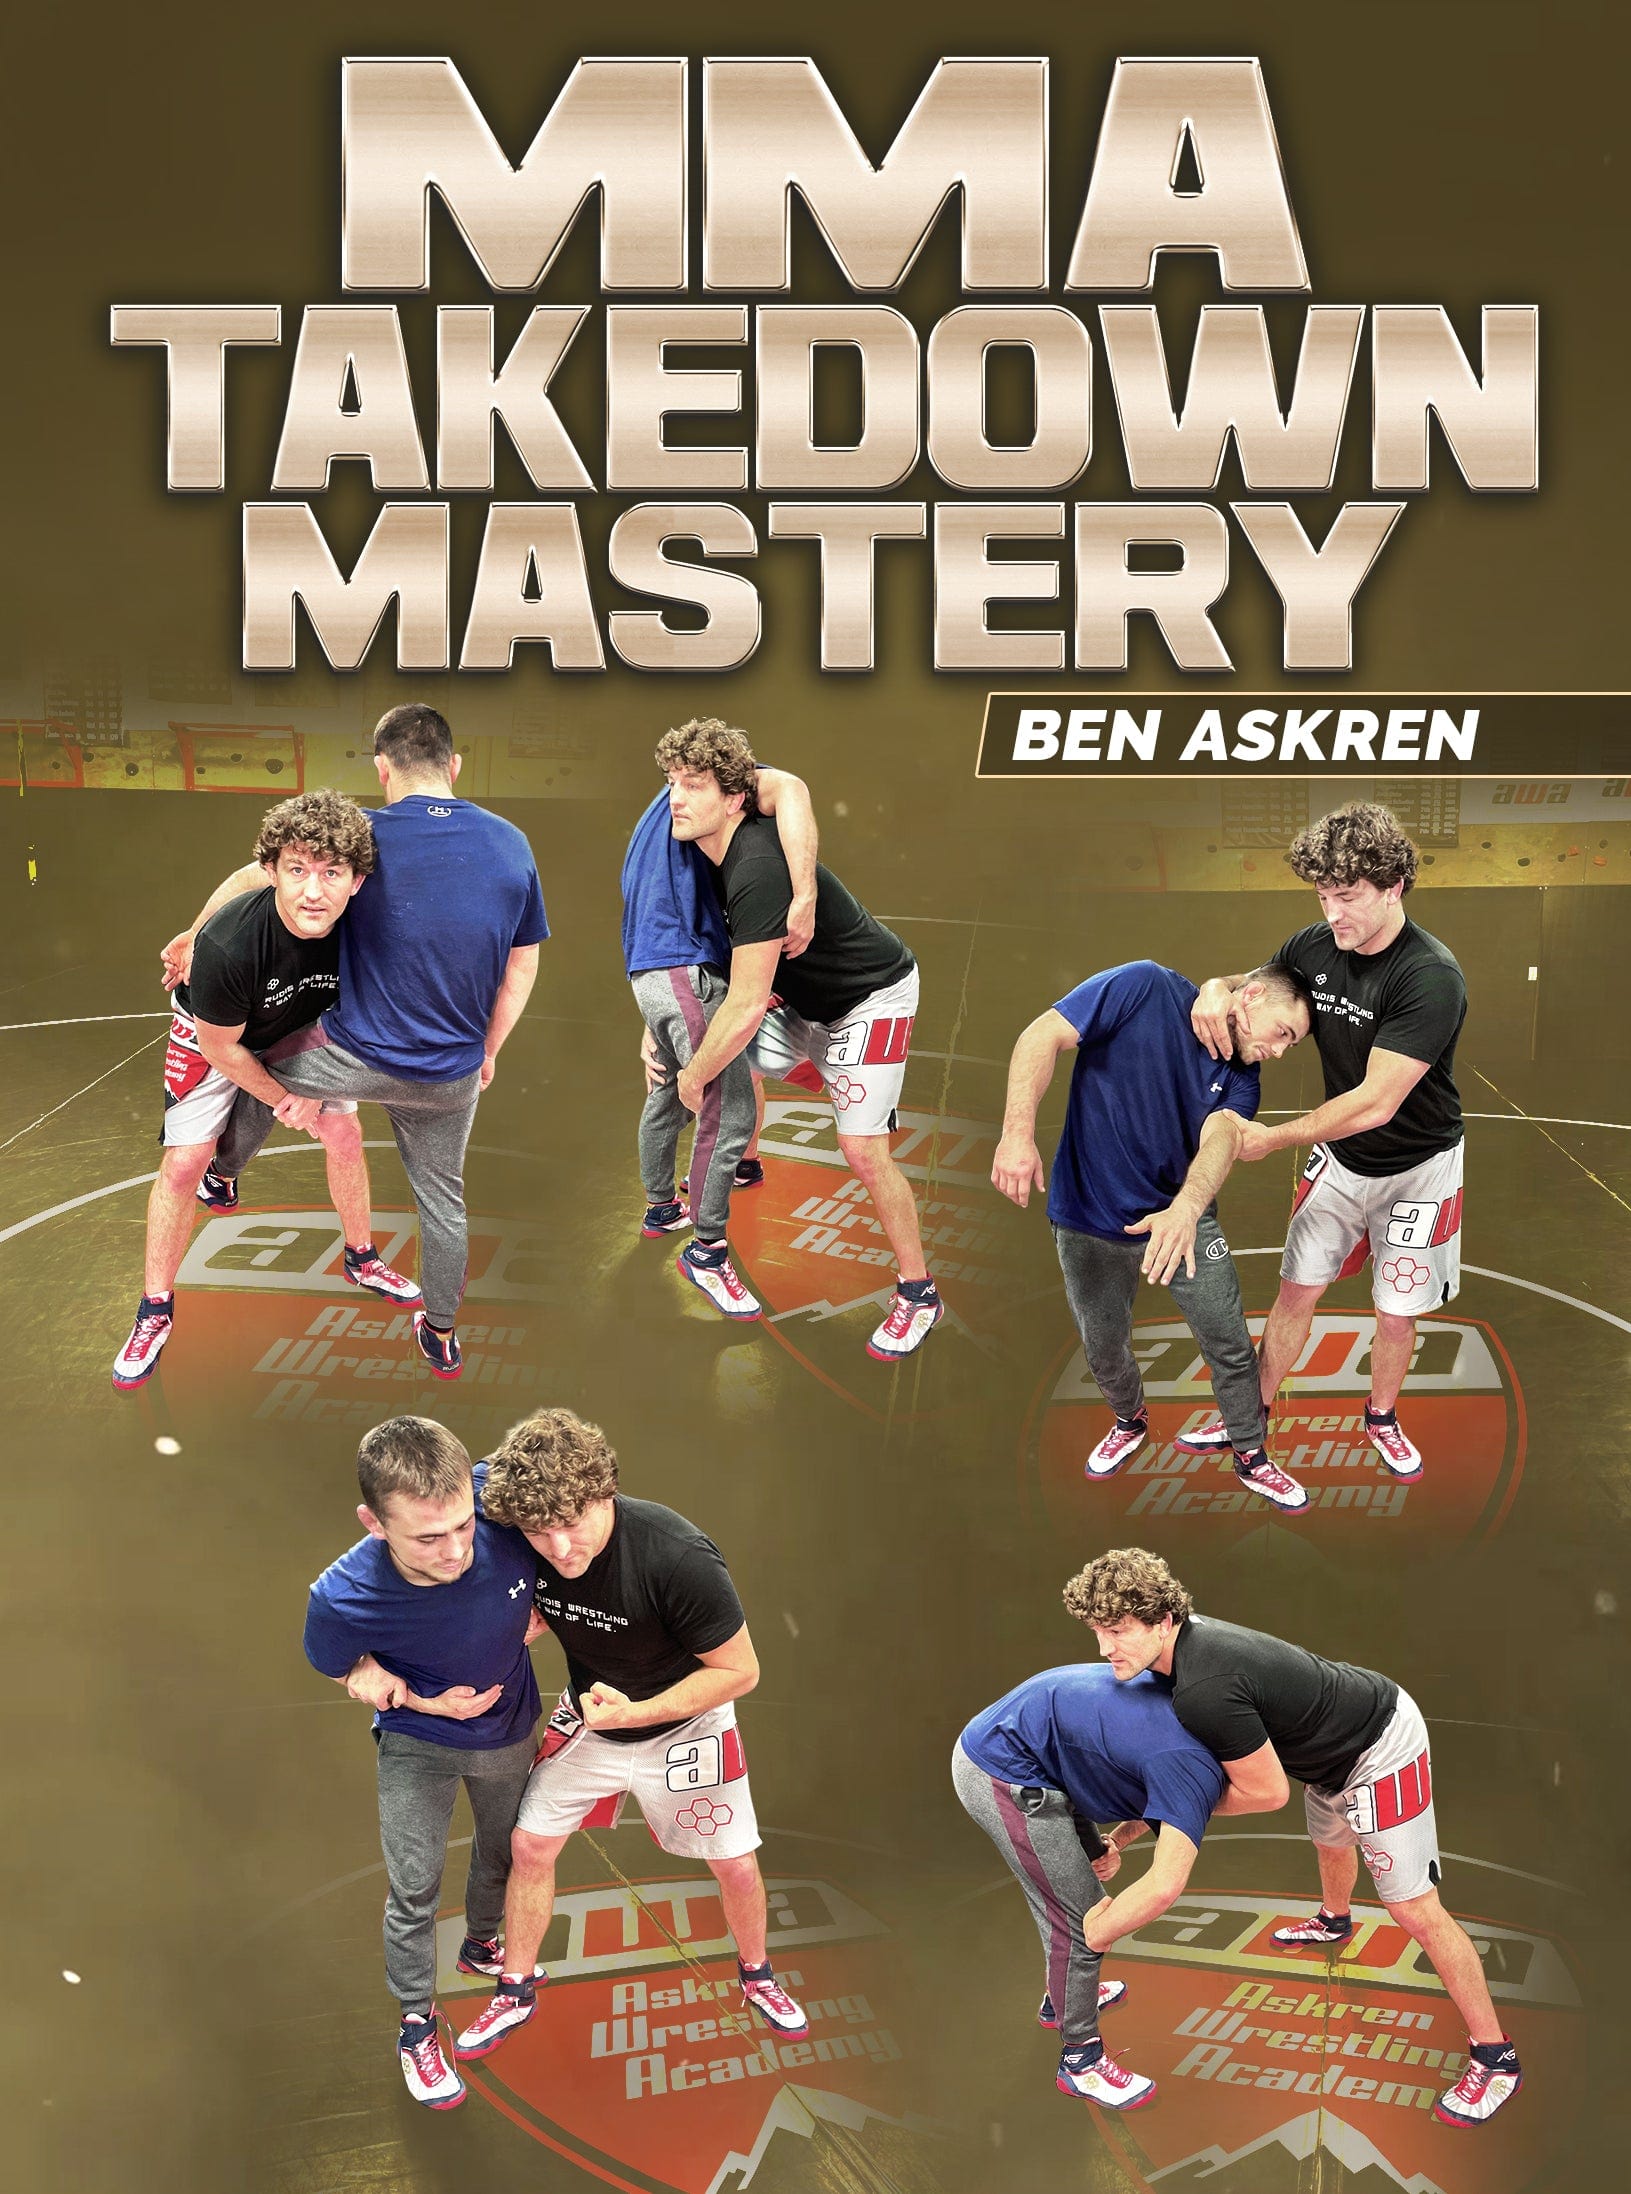 MMA Takedown Mastery by Ben Askren - Fanatic Wrestling